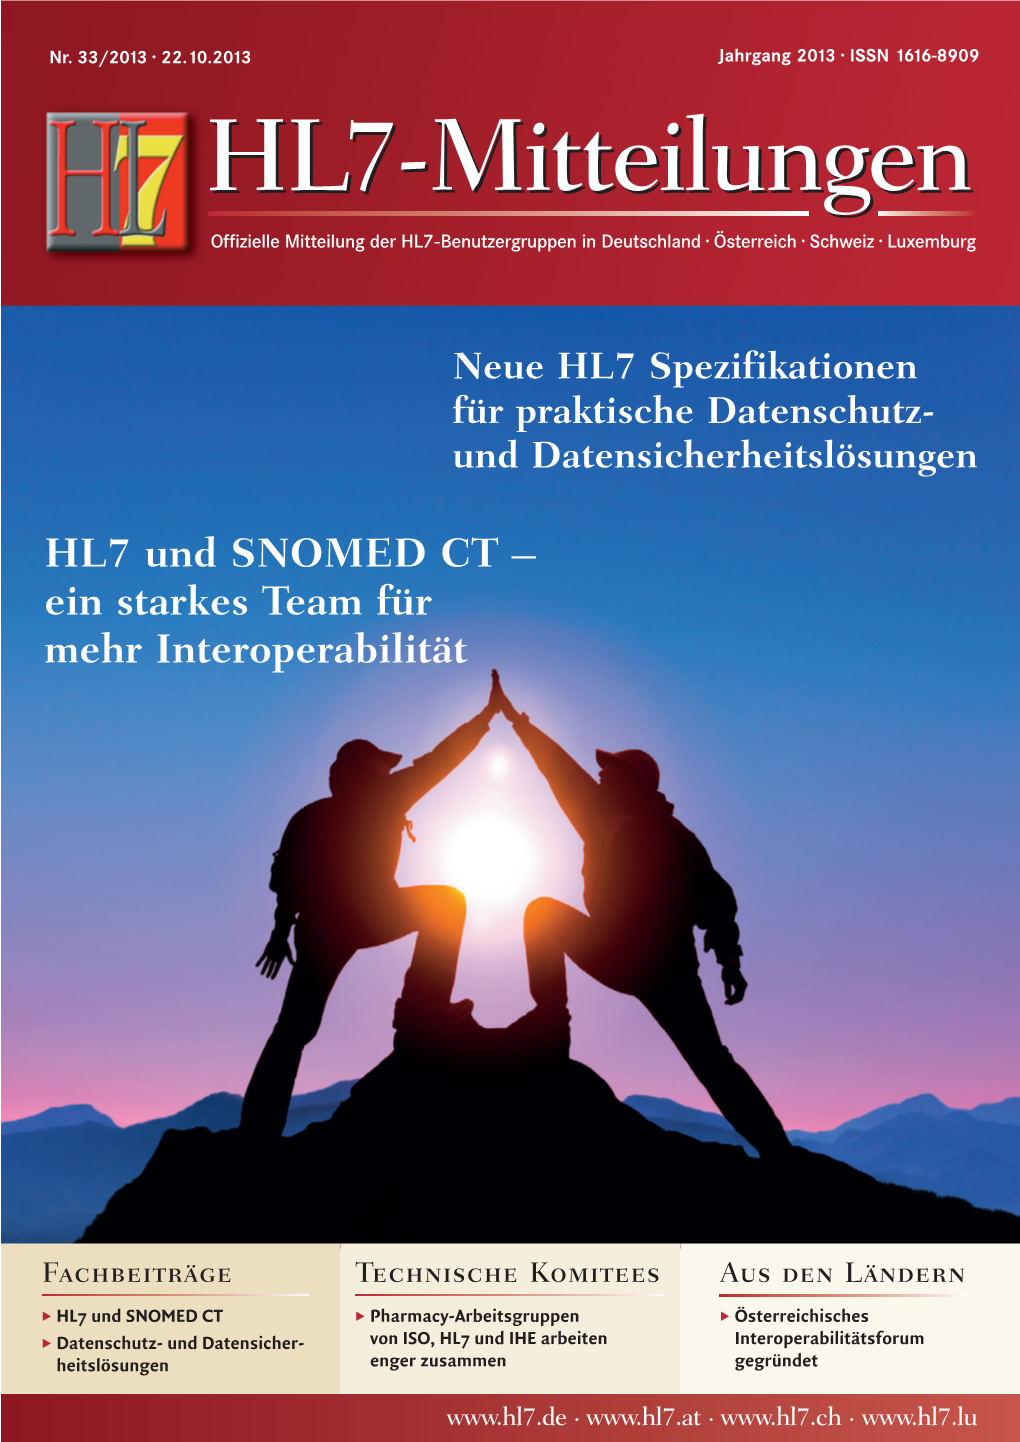 HL7 Mitteilungen 33/2013 (PDF-Download)